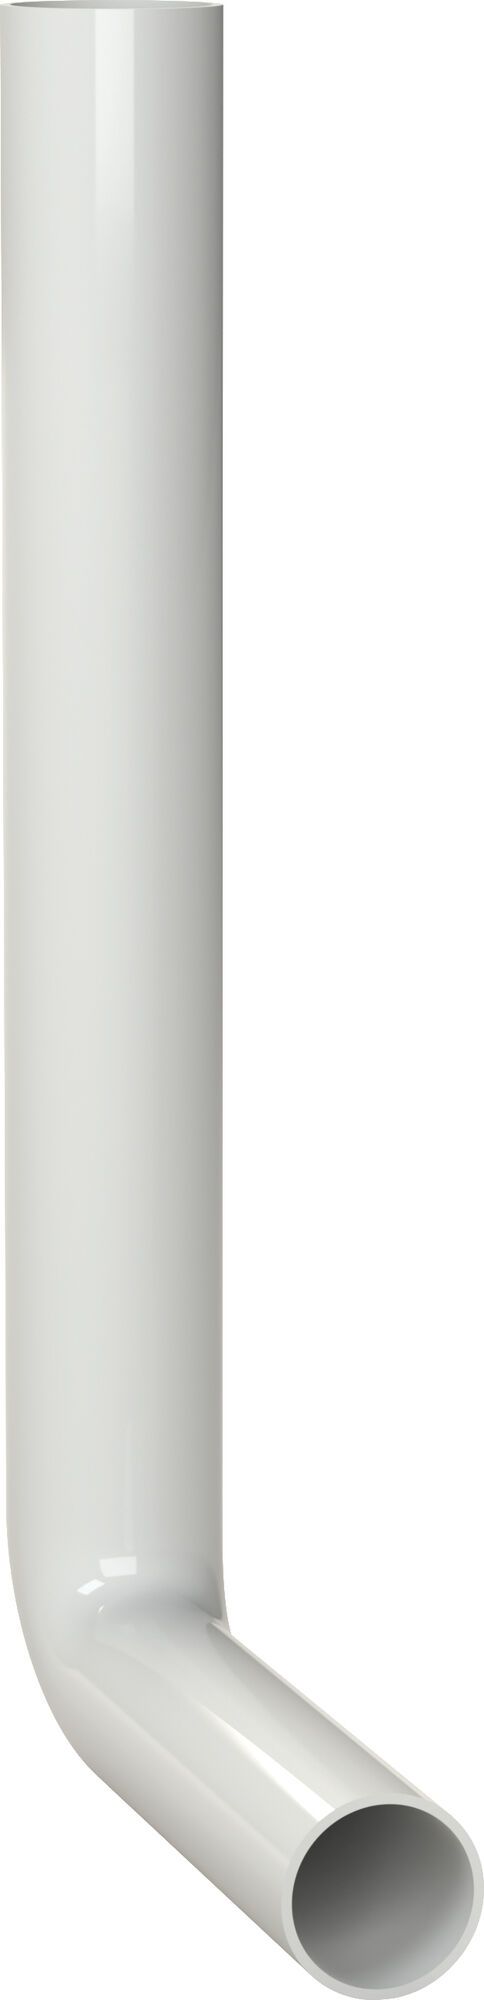 COT 380 x 210 mm, alb